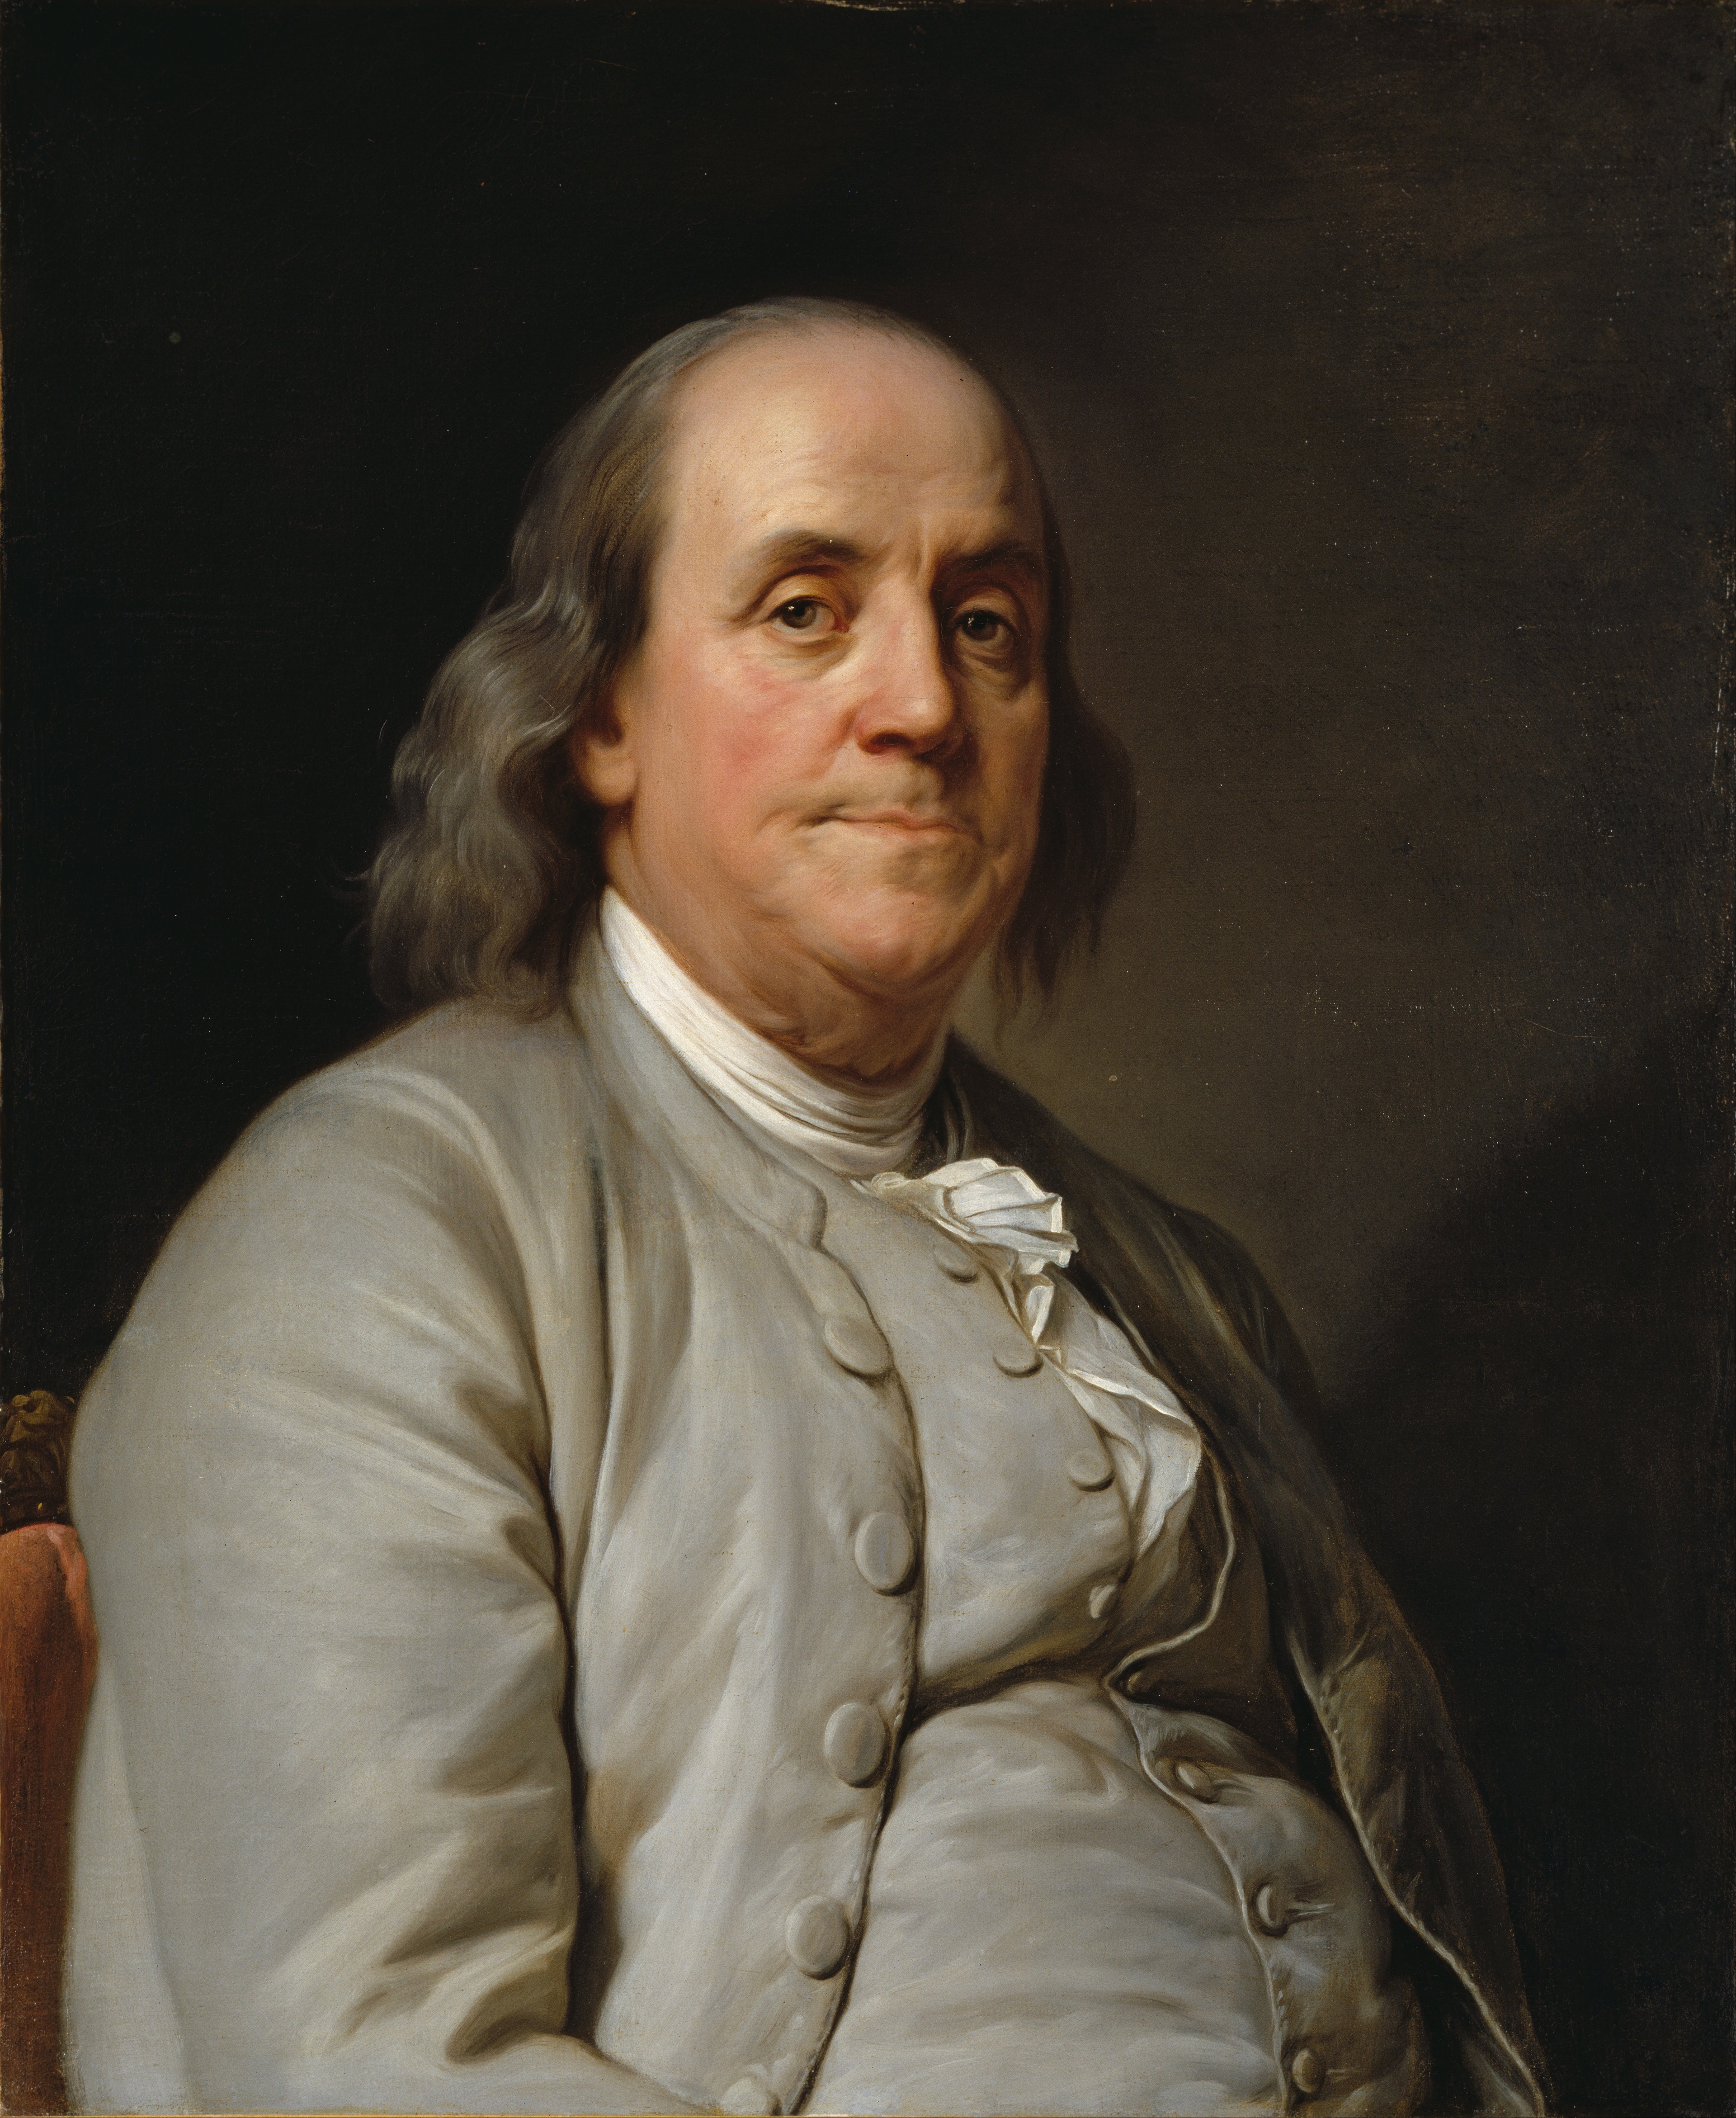 auteur Benjamin Franklin de la citation Le cœur d'un imbécile est dans sa bouche, mais la bouche d'un homme sage est dans son cœur.